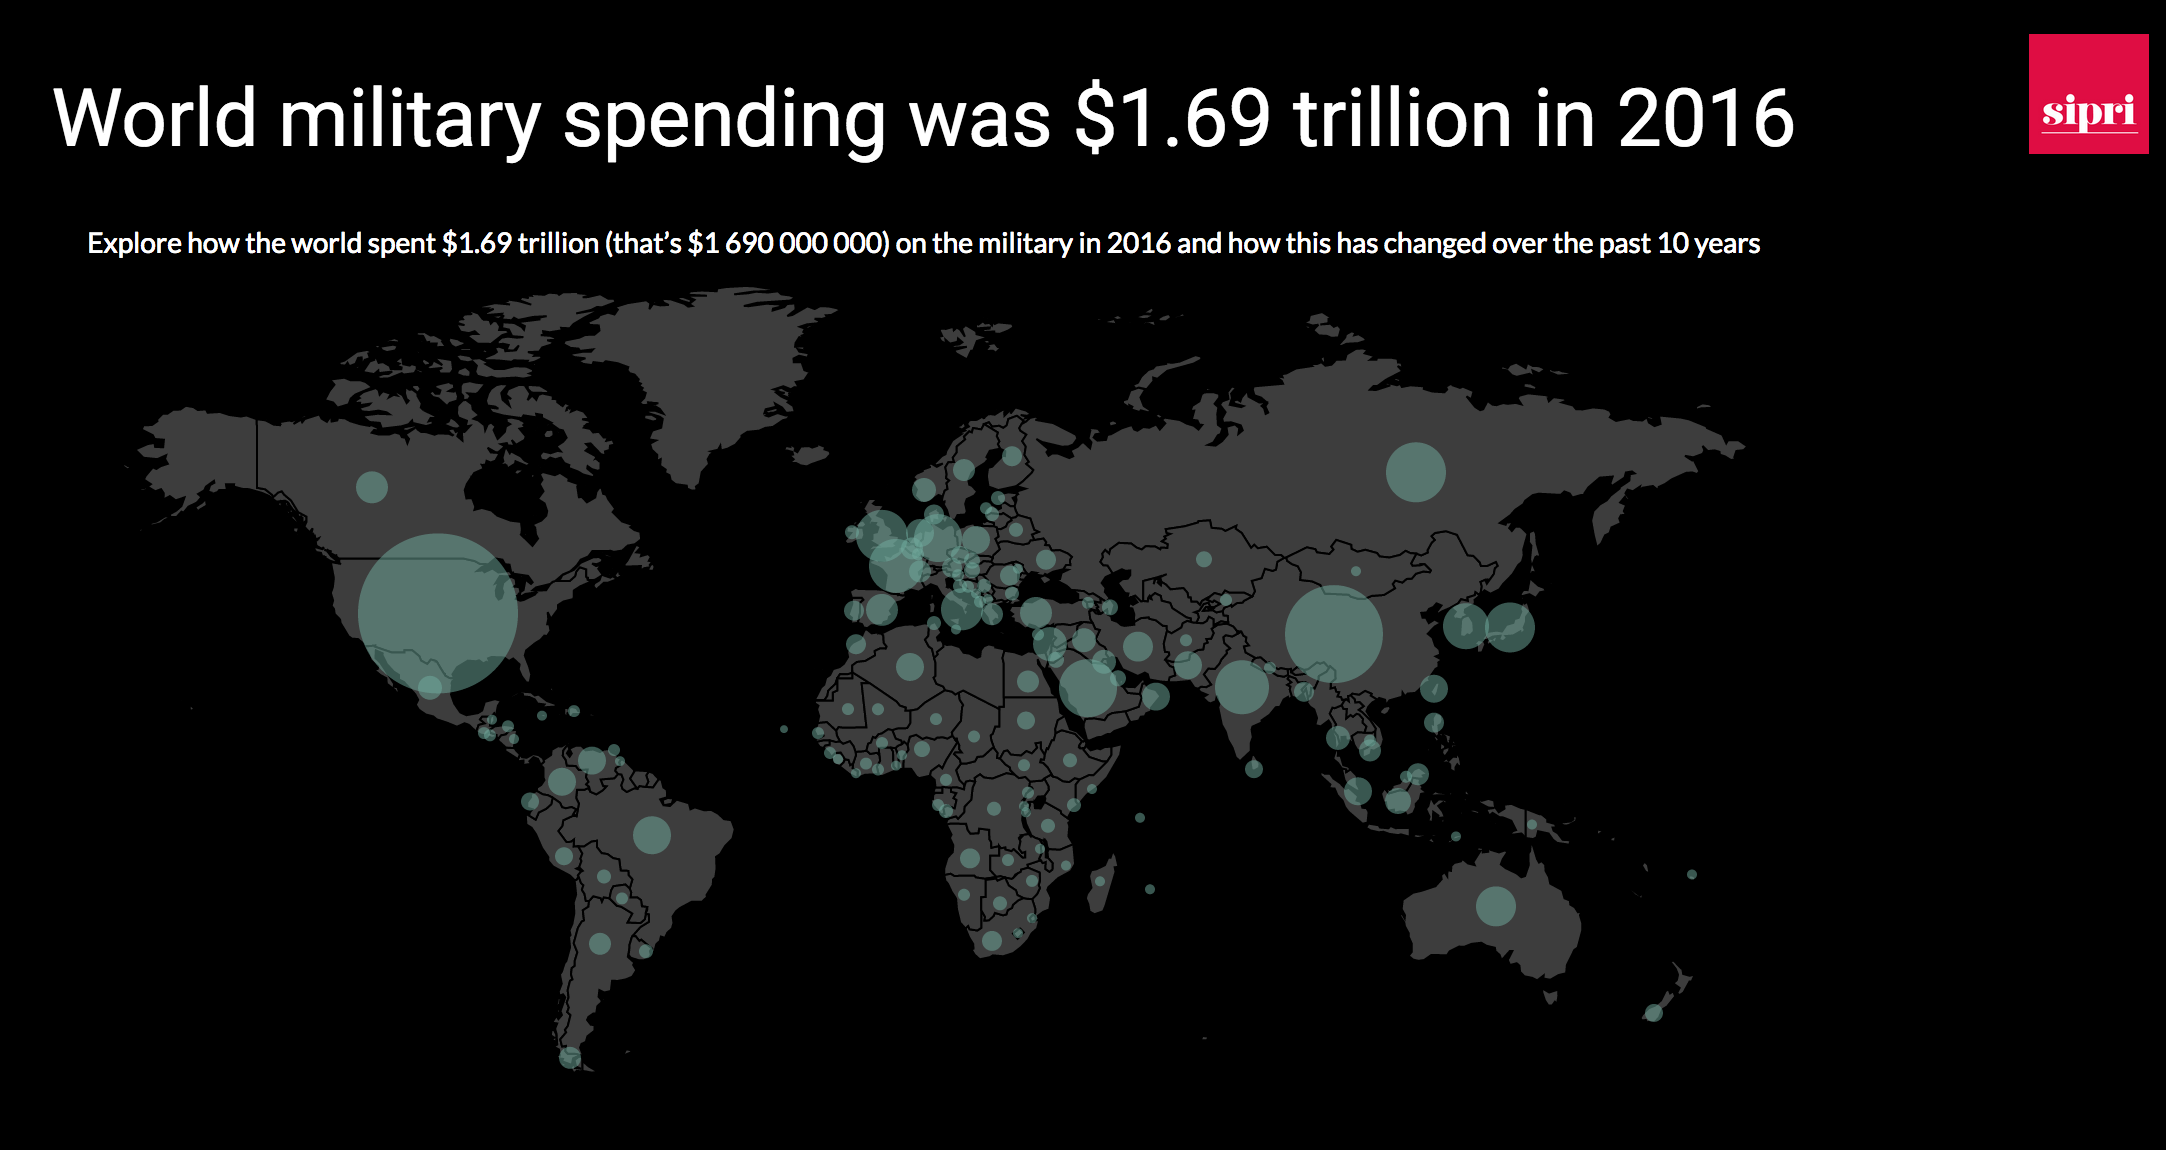 SIPRI publica los datos actualizados sobre el gasto militar mundial